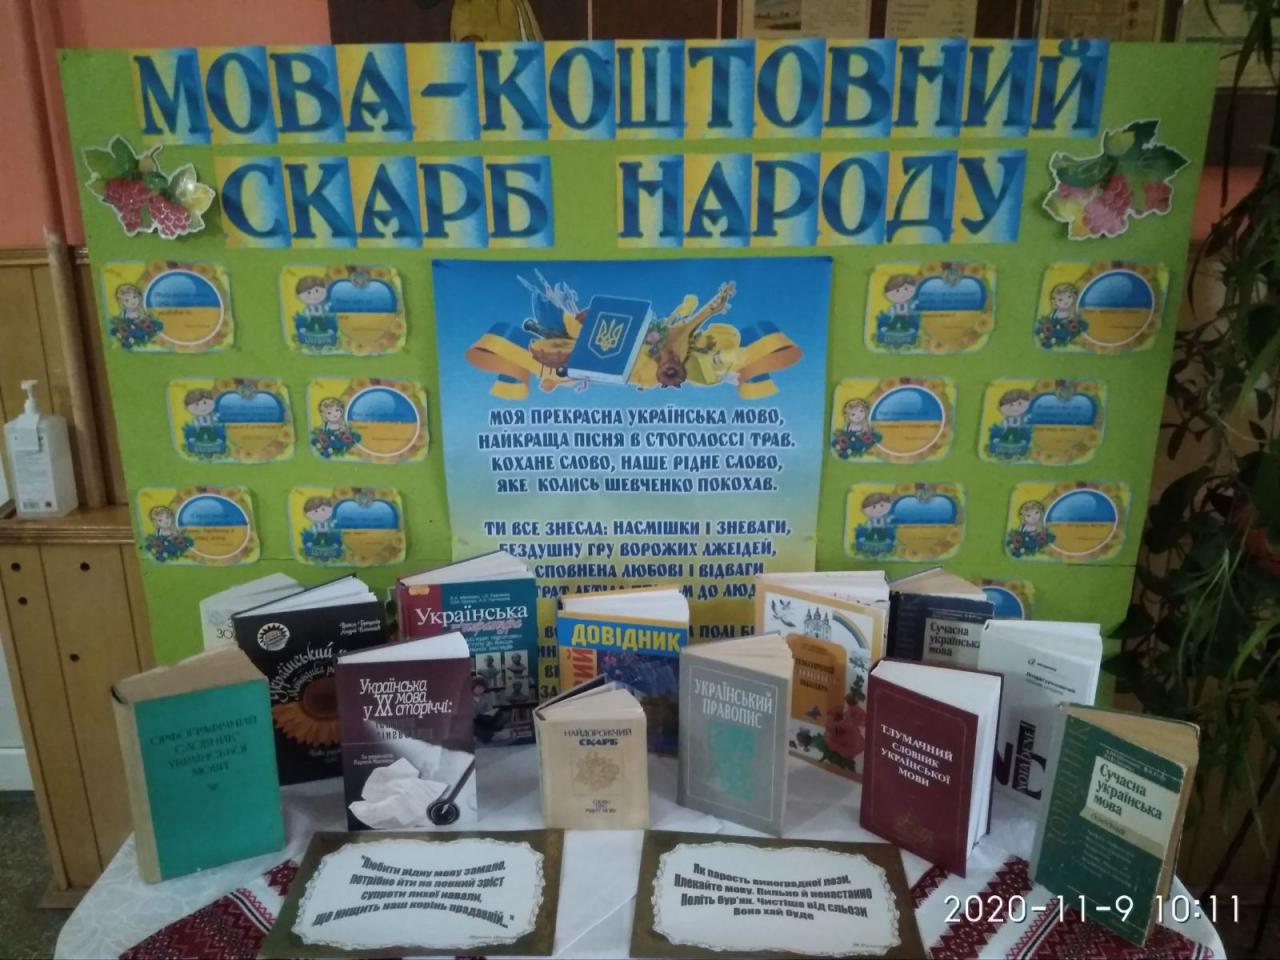 http://dunrada.gov.ua/uploadfile/archive_news/2020/11/09/2020-11-09_5919/images/images-26911.jpg